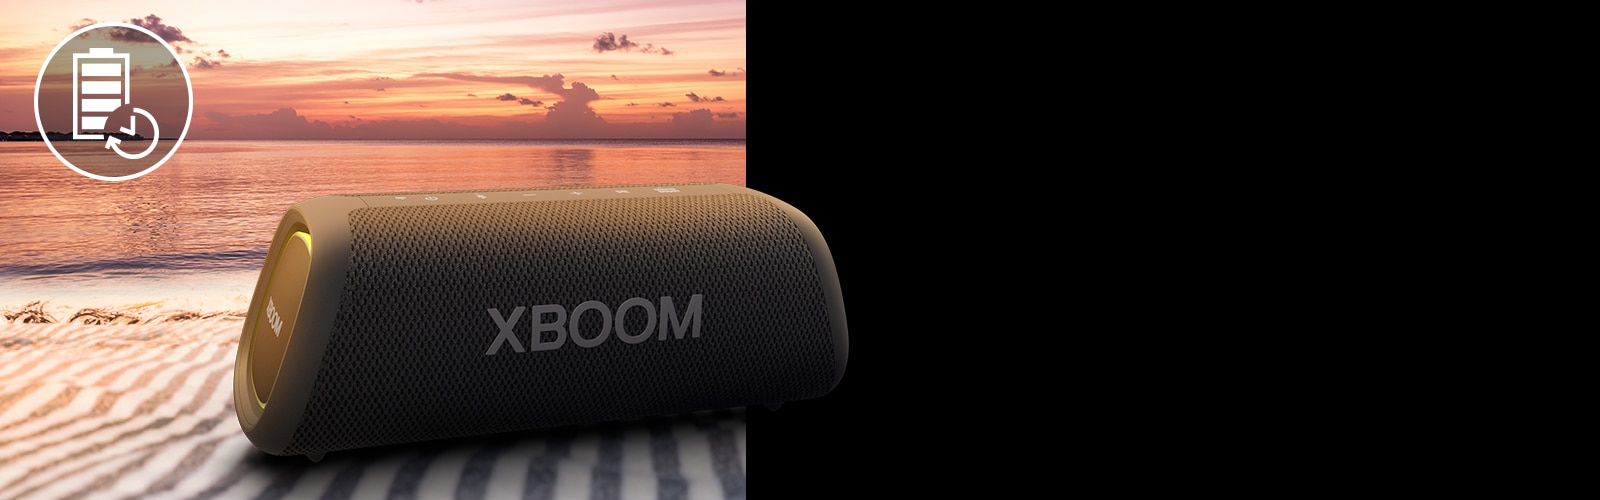 مكبر الصوت موضوع فوق منشفة الشاطئ. يظهر أمام مكبر الصوت منظر الغروب على الشاطئ لتوضيح أن بطارية هذا المنتج تدوم حتى 18 ساعة.